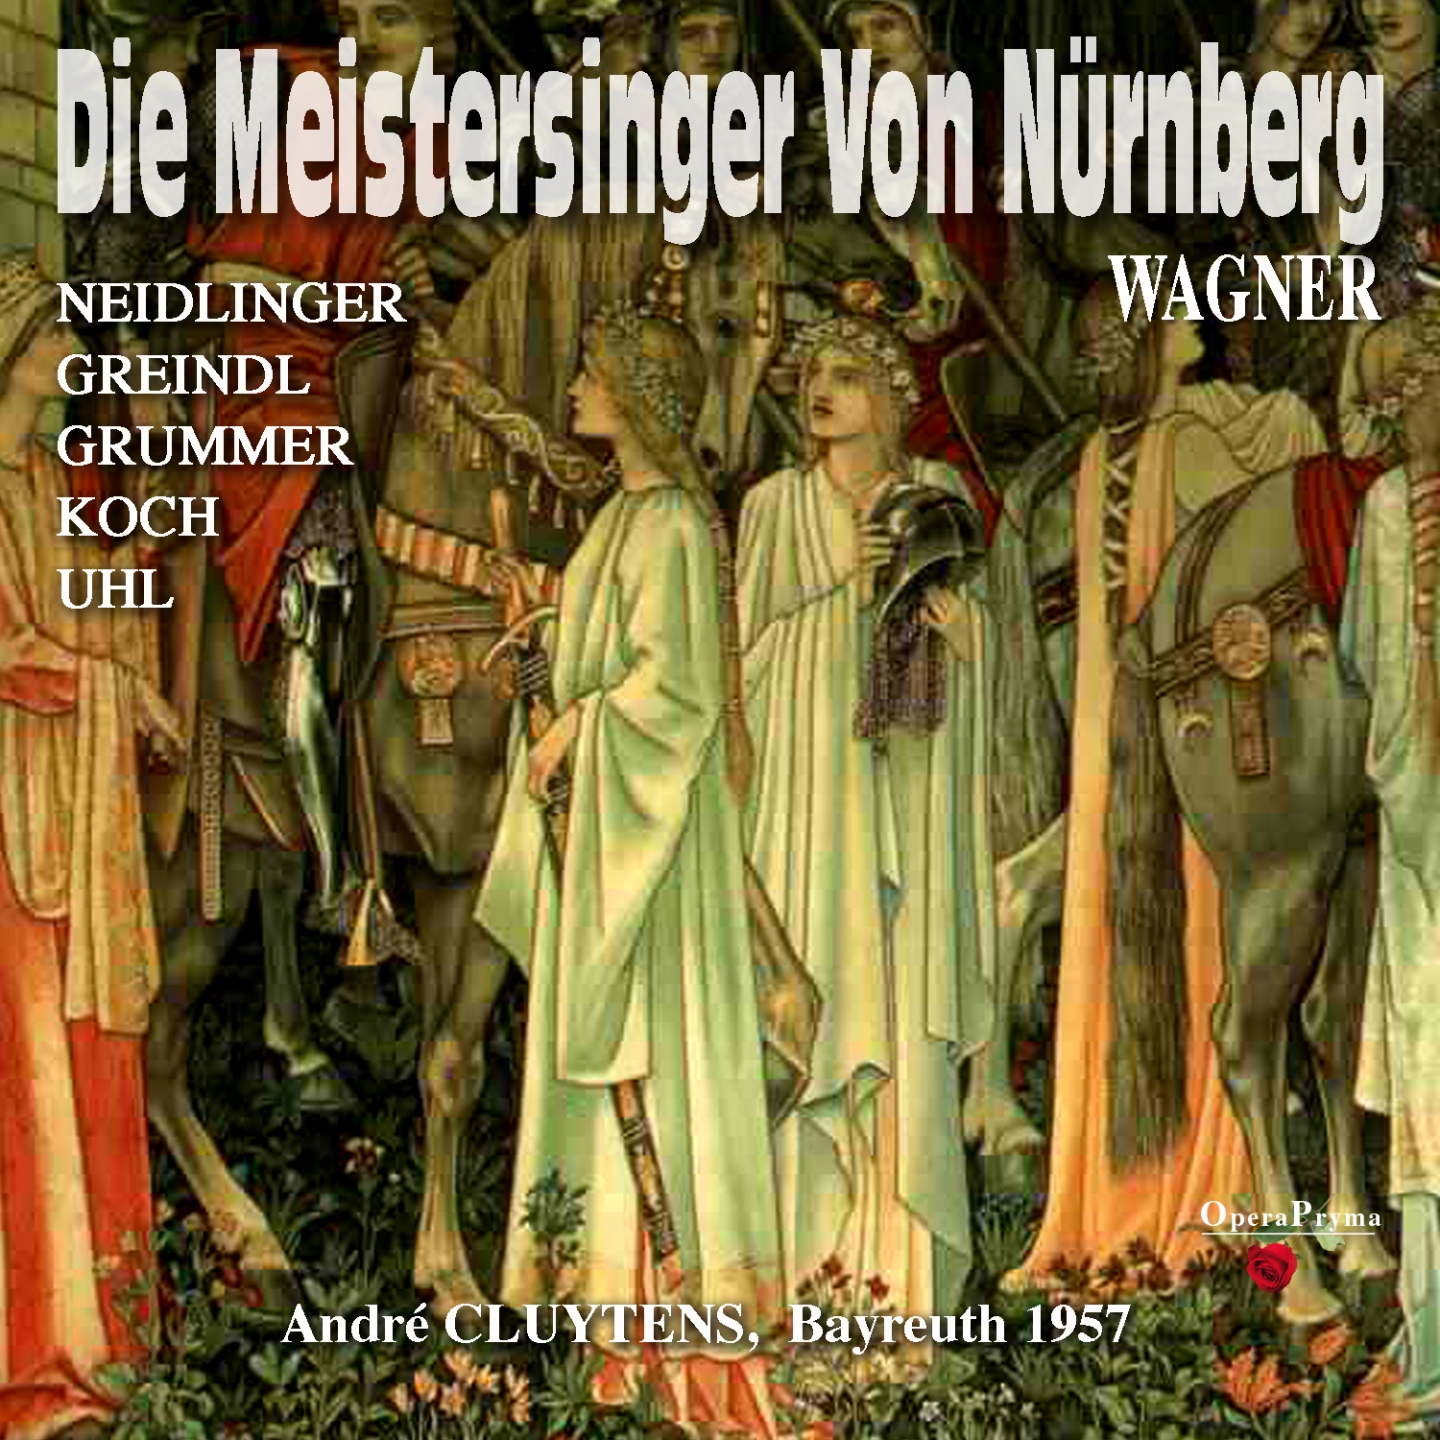 Die Meistersinger von Nü rnberg, Act I: " Seid meiner Treue wohl versehen" Veit Pogner, Beckmesser, Walther, Sachs